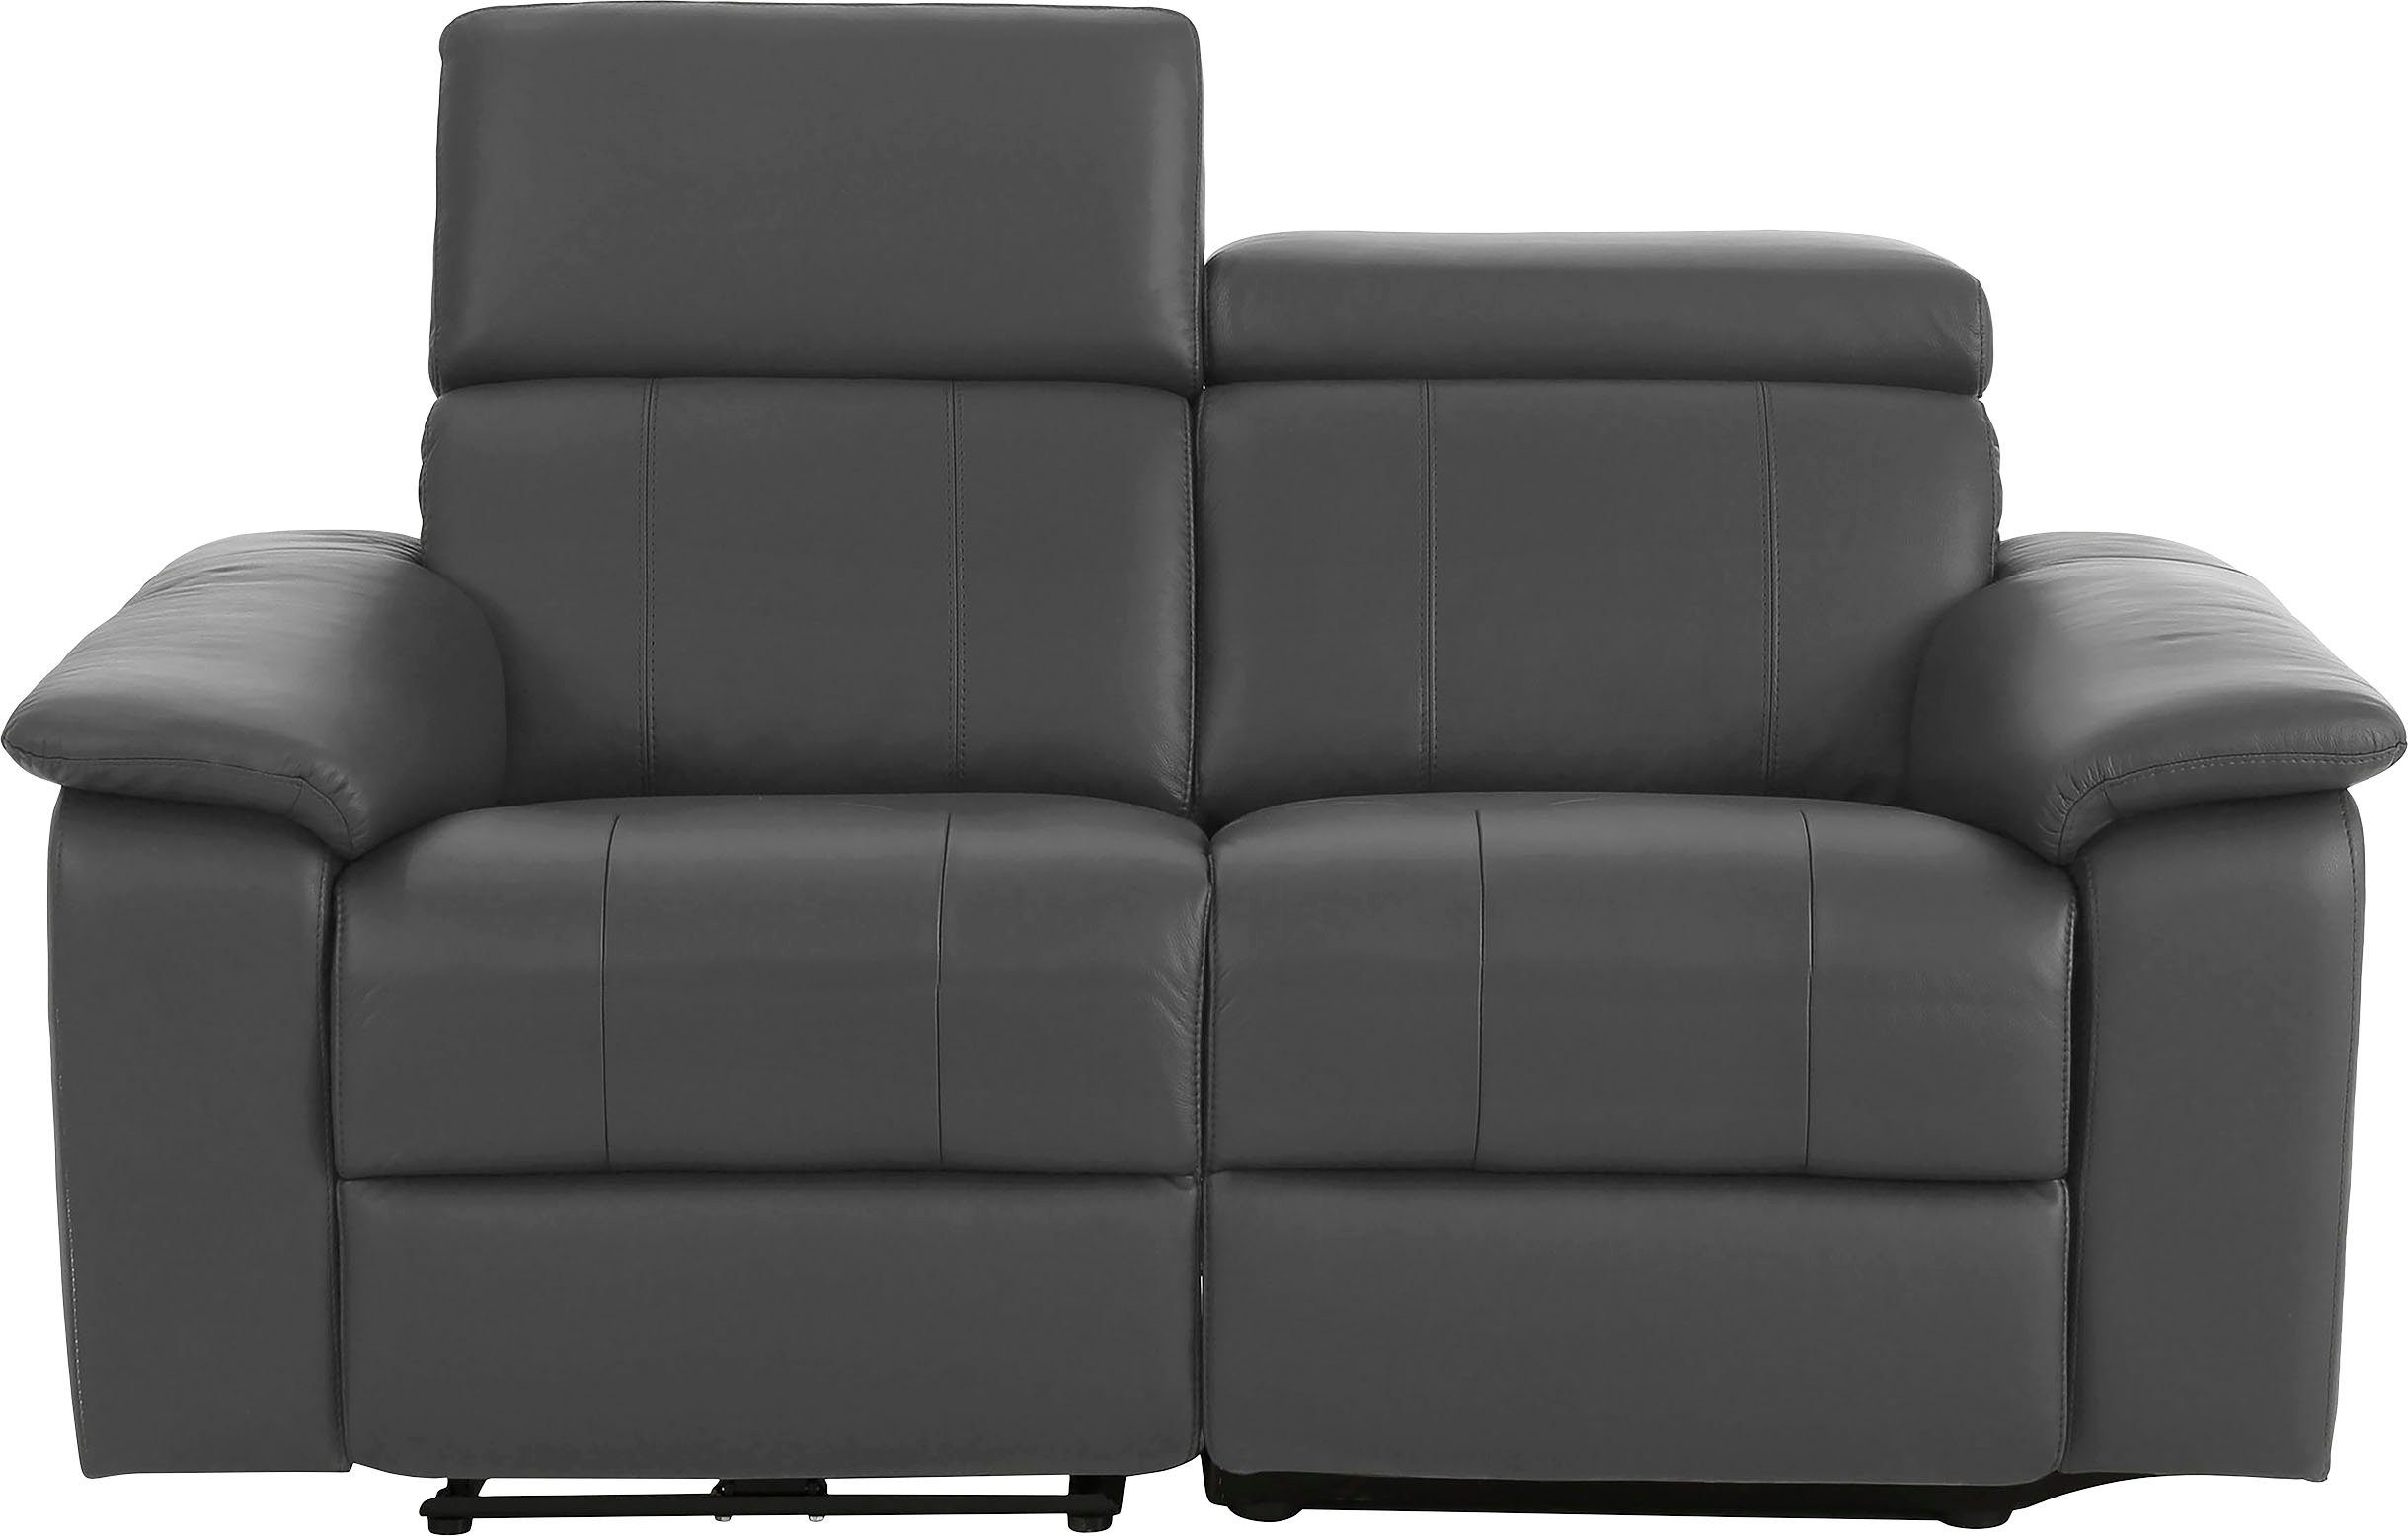 Home affaire 2-Sitzer Binado, mit manueller oder elektrischer Relaxfunktion mit USB-Anschluss